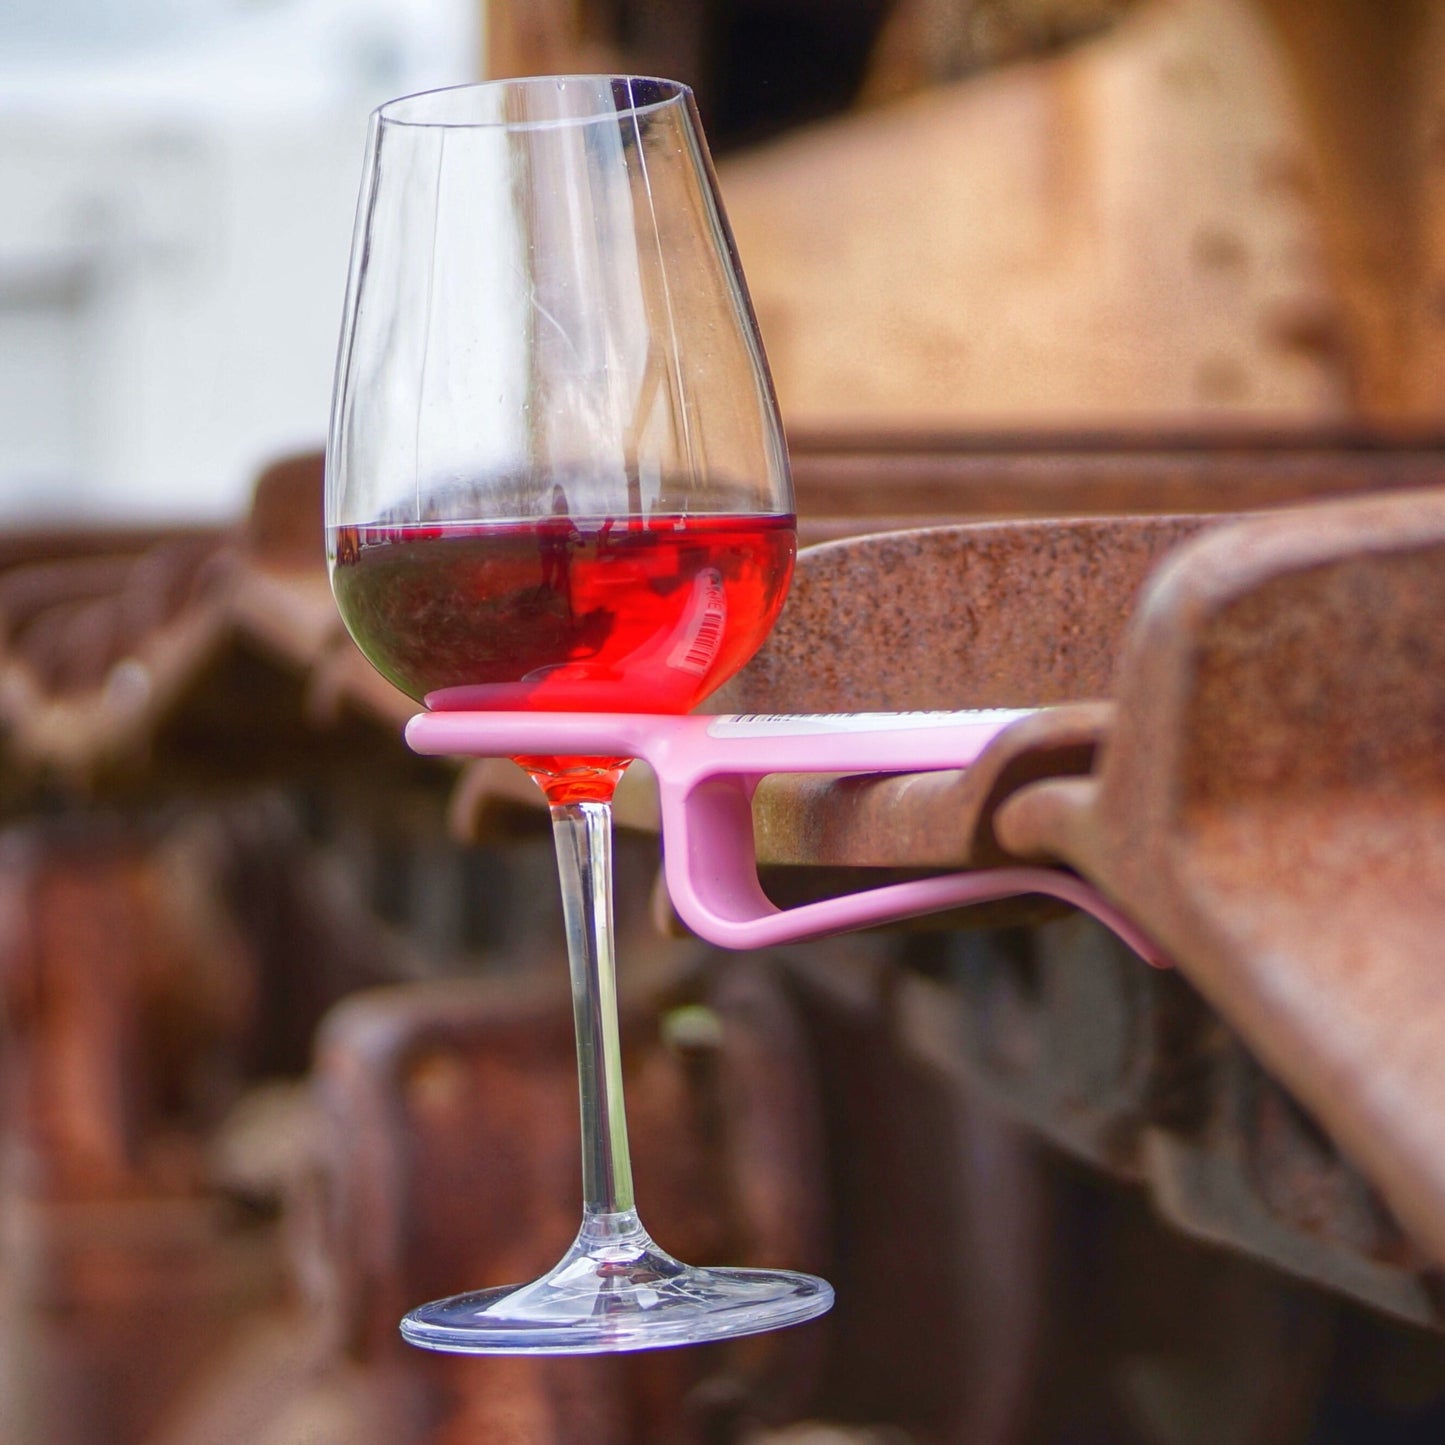 Pink wine glass holder on machinery equipment